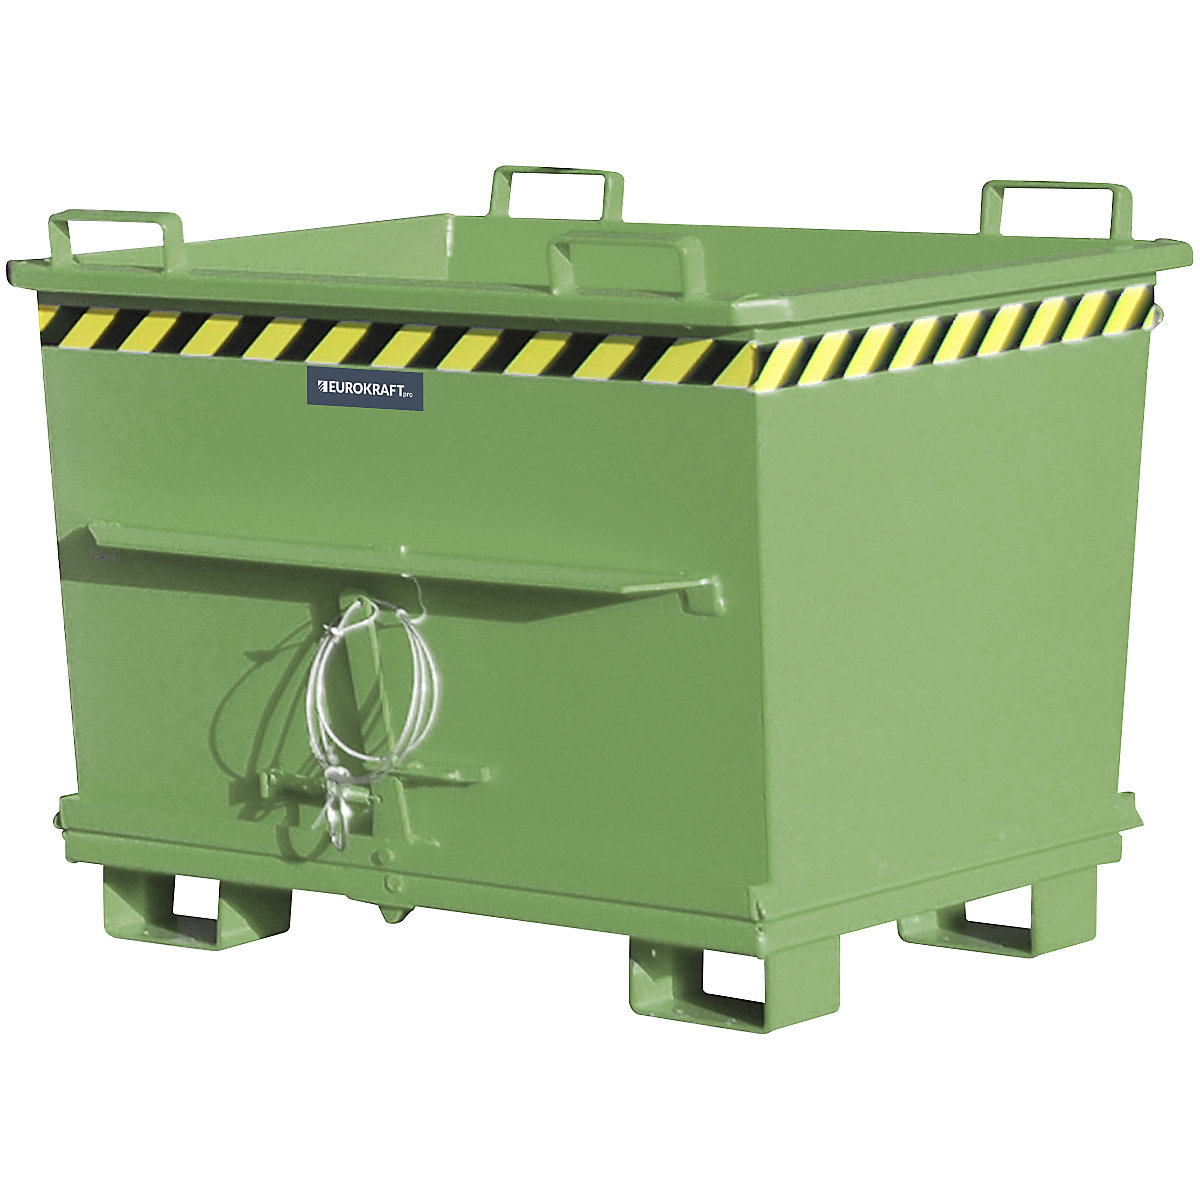 Conteneur conique à fond ouvrant – eurokraft pro, capacité 0,7 m³, force 1500 kg, coloris vert RAL 6011-14